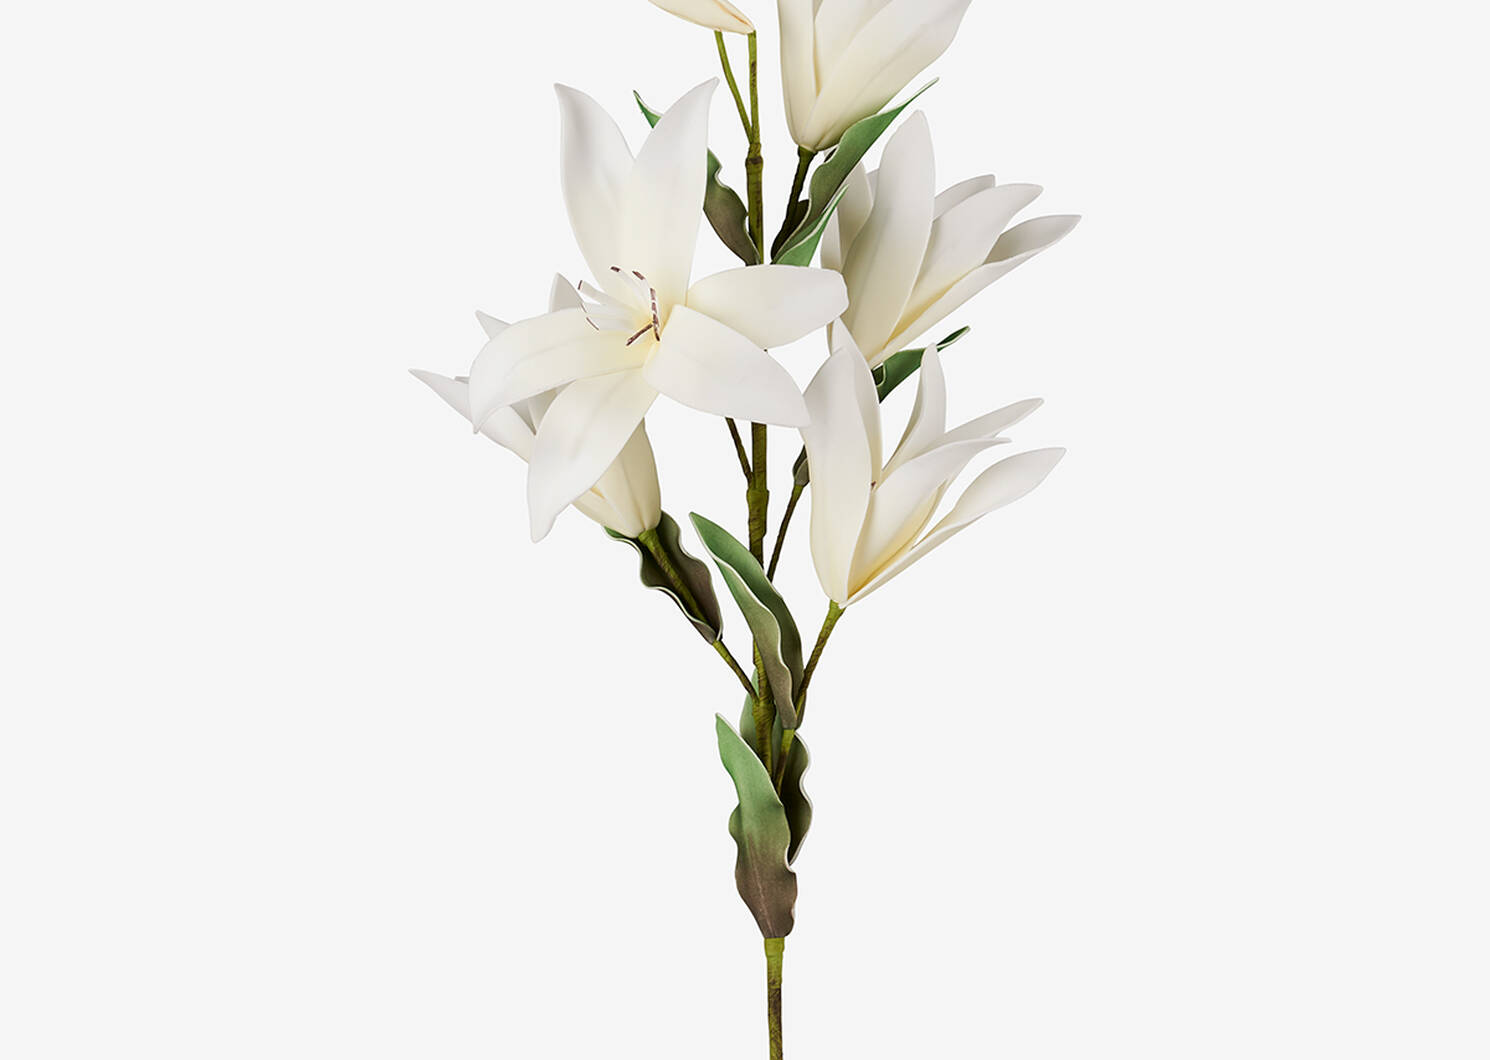 Kadal Flower Bunch White